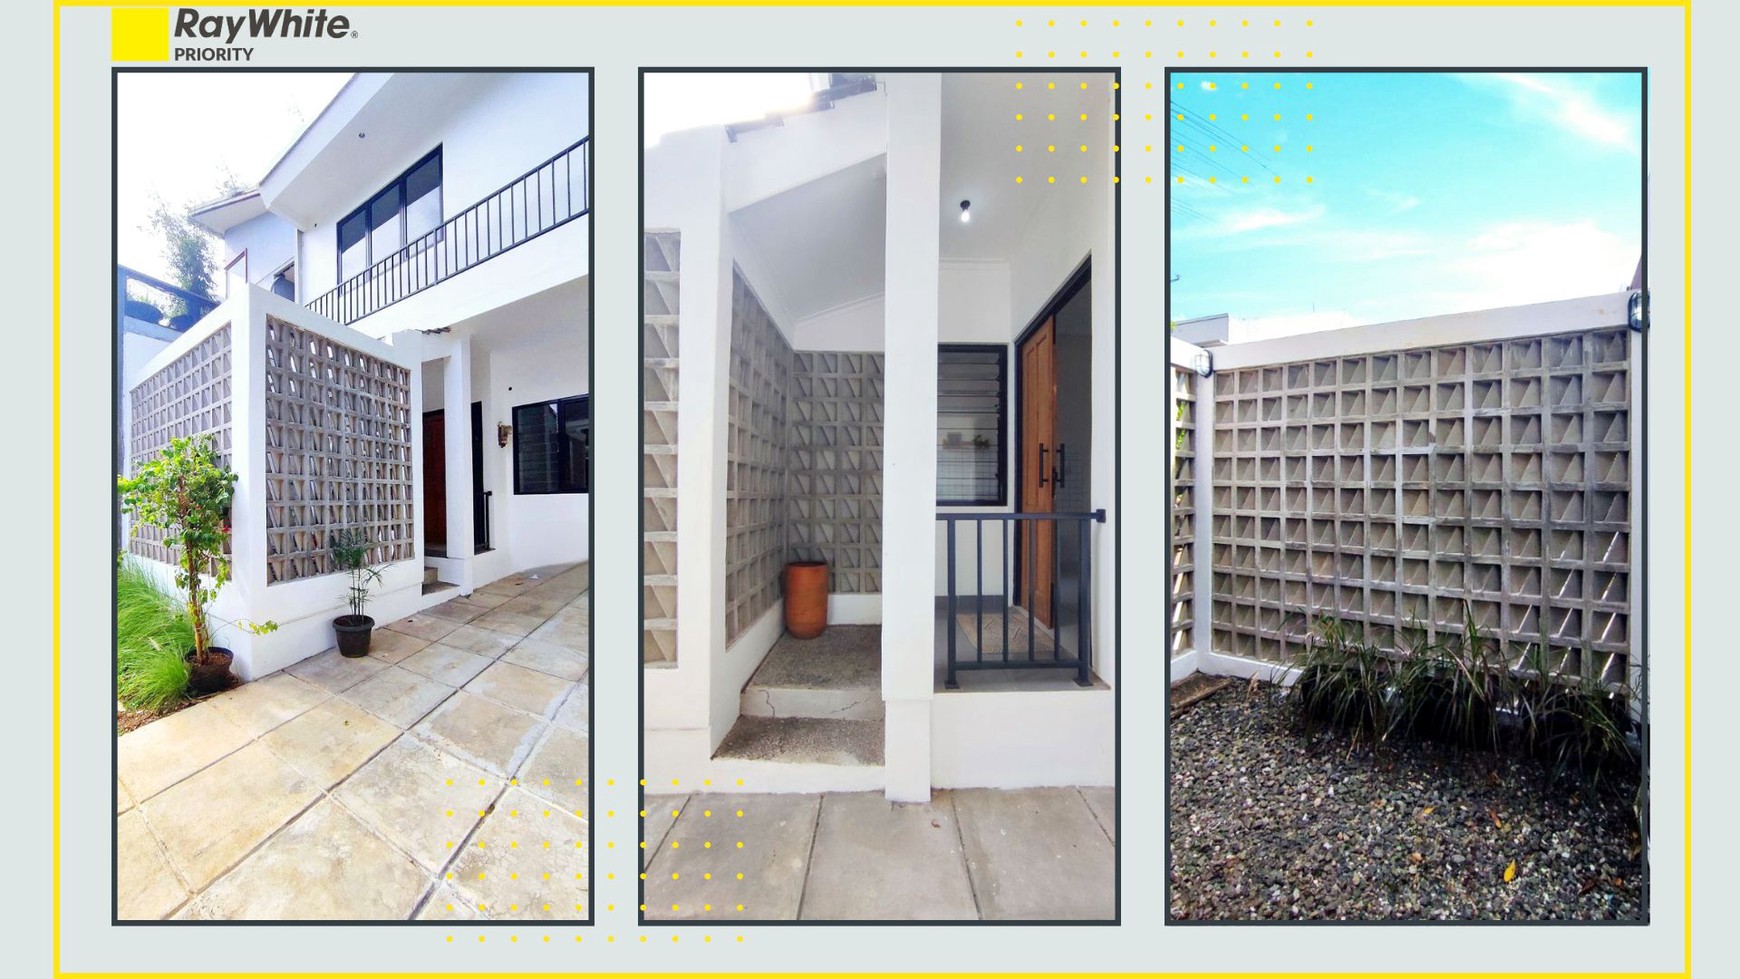 Rumah Cantik Minimalis  di Permata Bintaro Luas 72m2 Harga 1.6M Nego sampai Deal